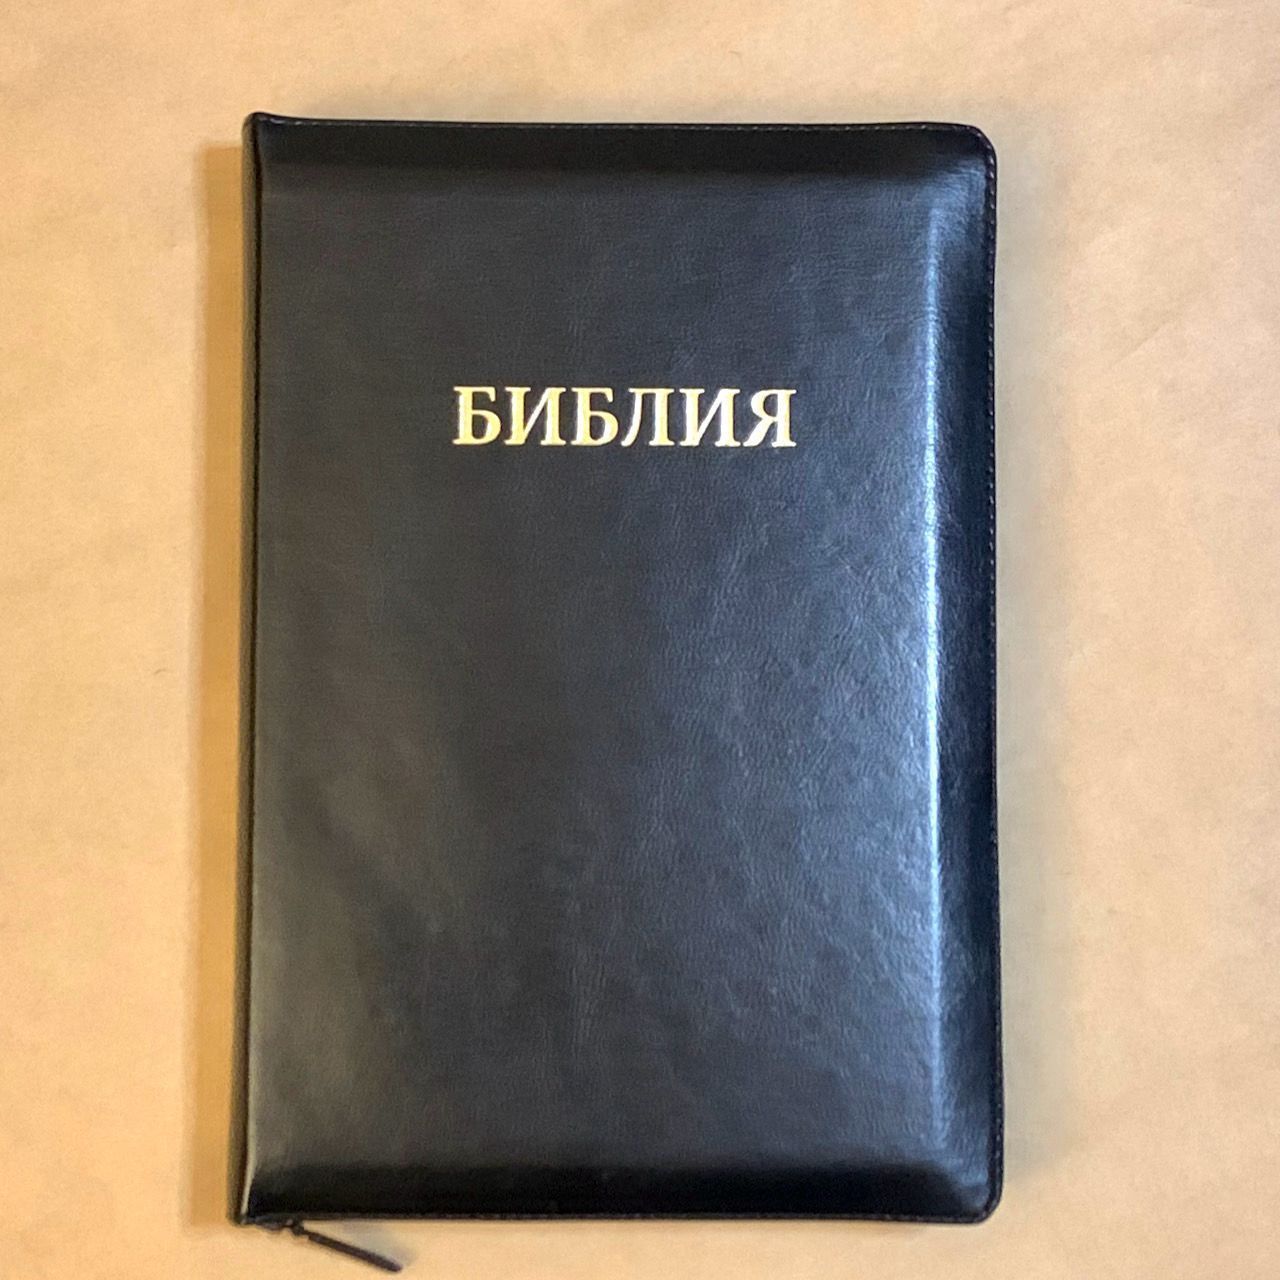 Библия 077z формат, переплет из искусственной кожи на молнии, цвет черный, большой формат, 180*260 мм, цветные карты, крупный шрифт